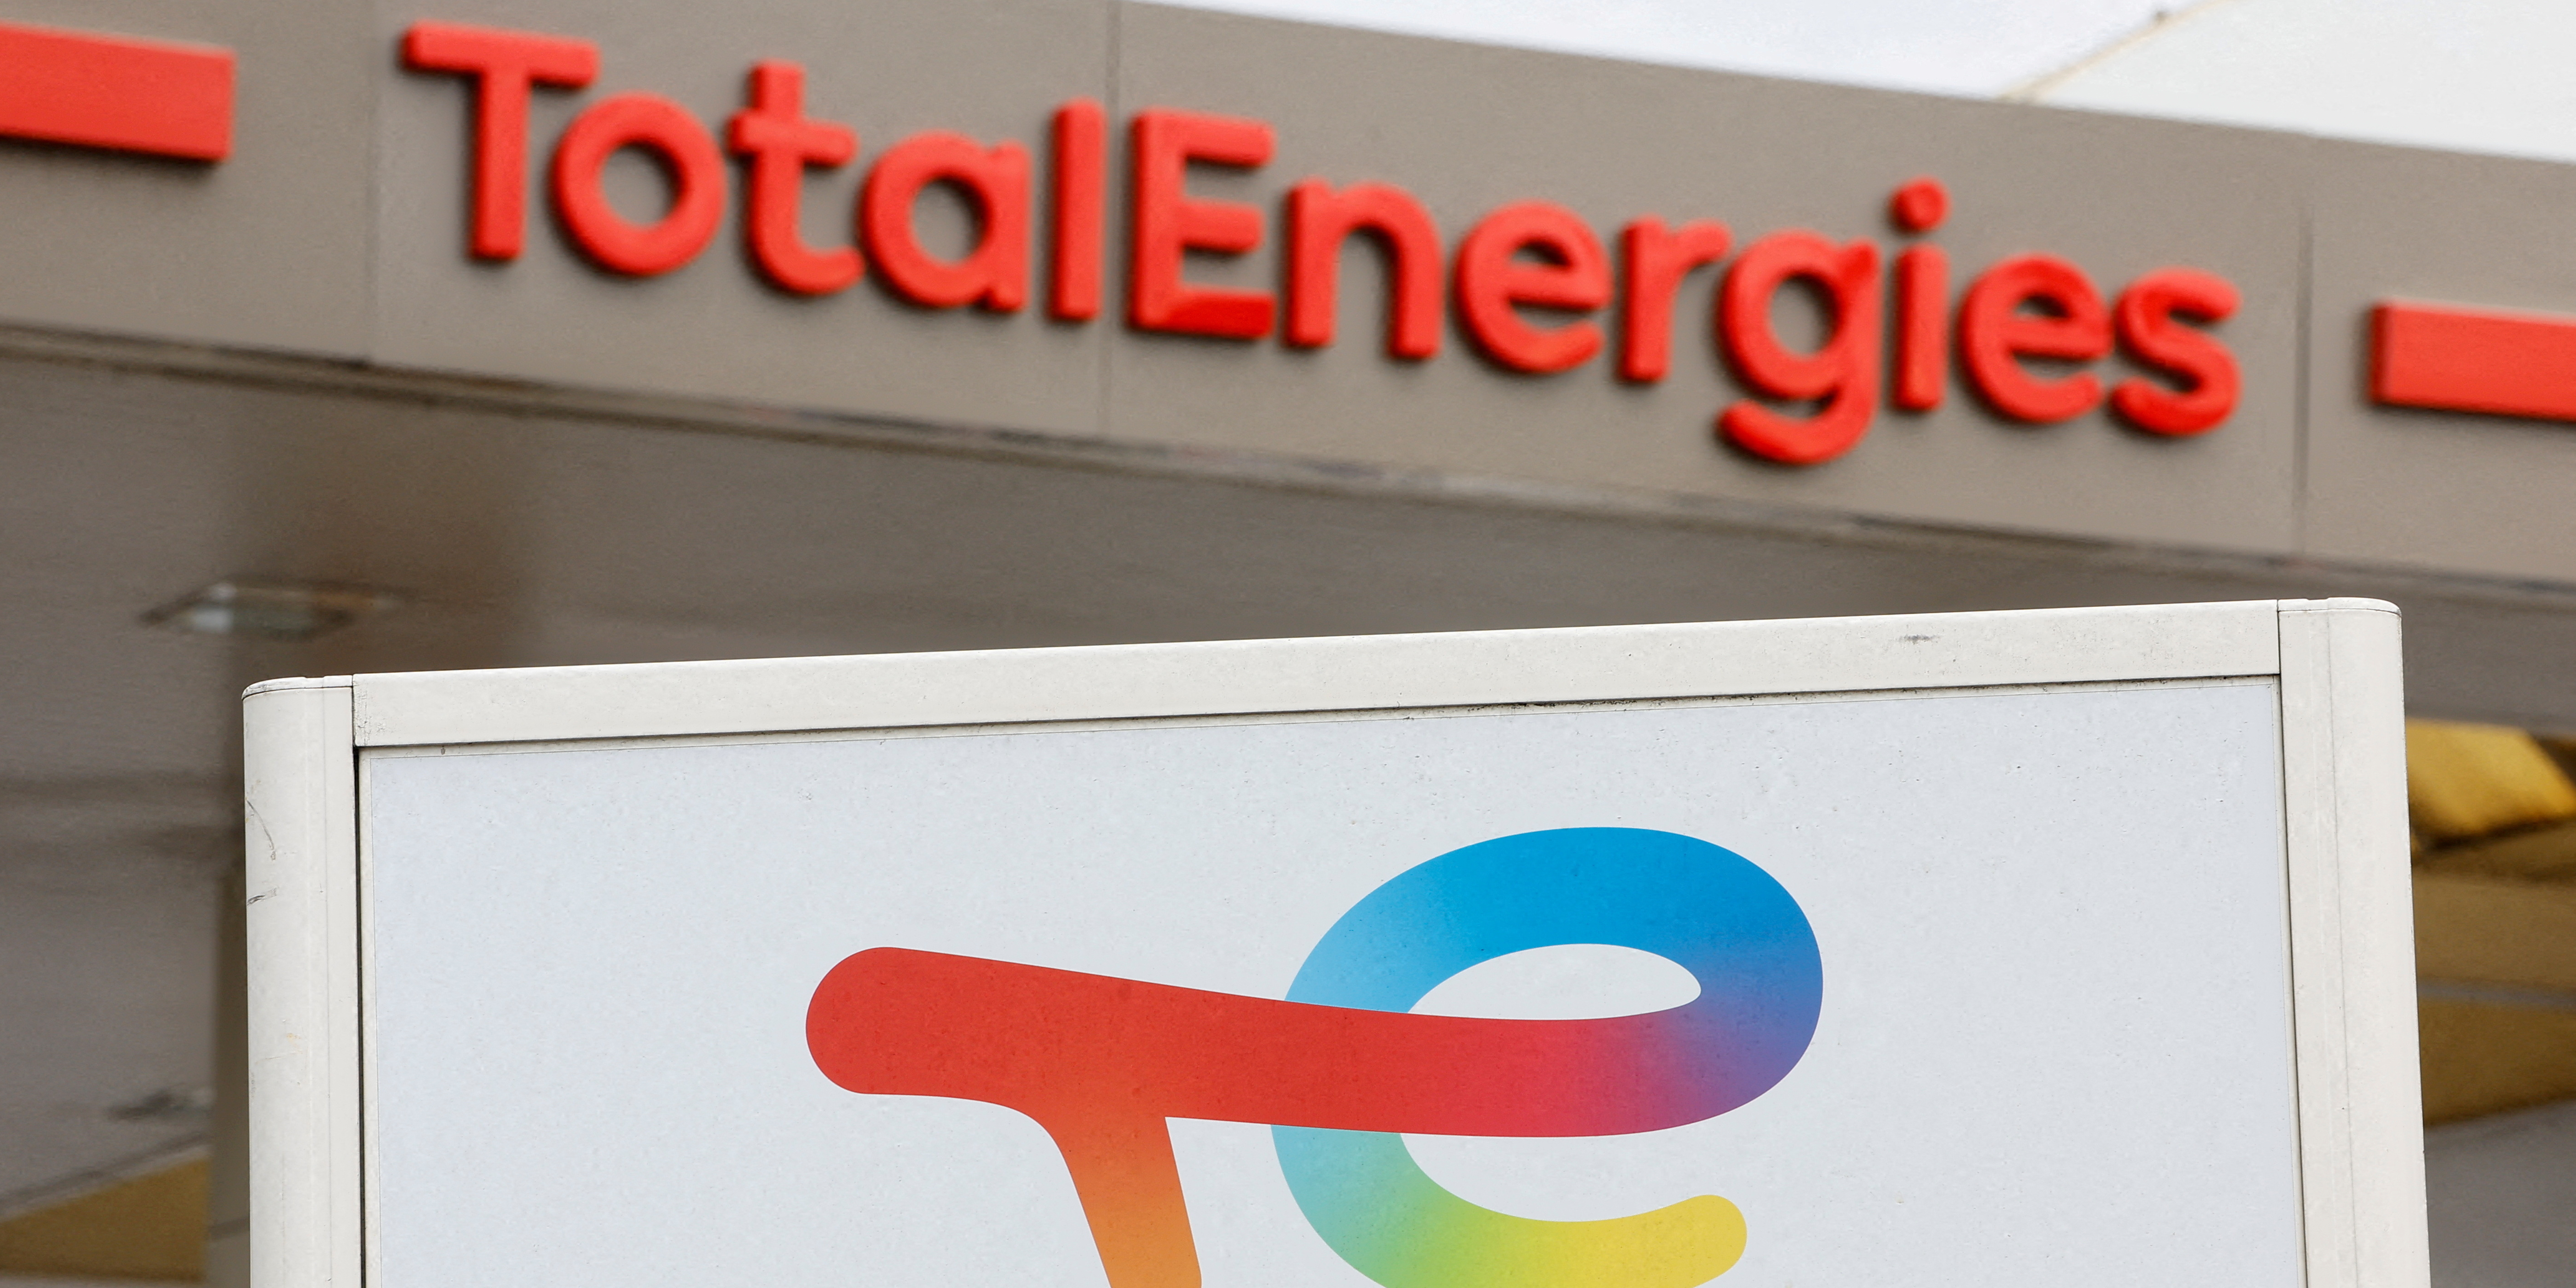 TotalEnergies cède ses stations-services à Couche-Tard dans plusieurs pays